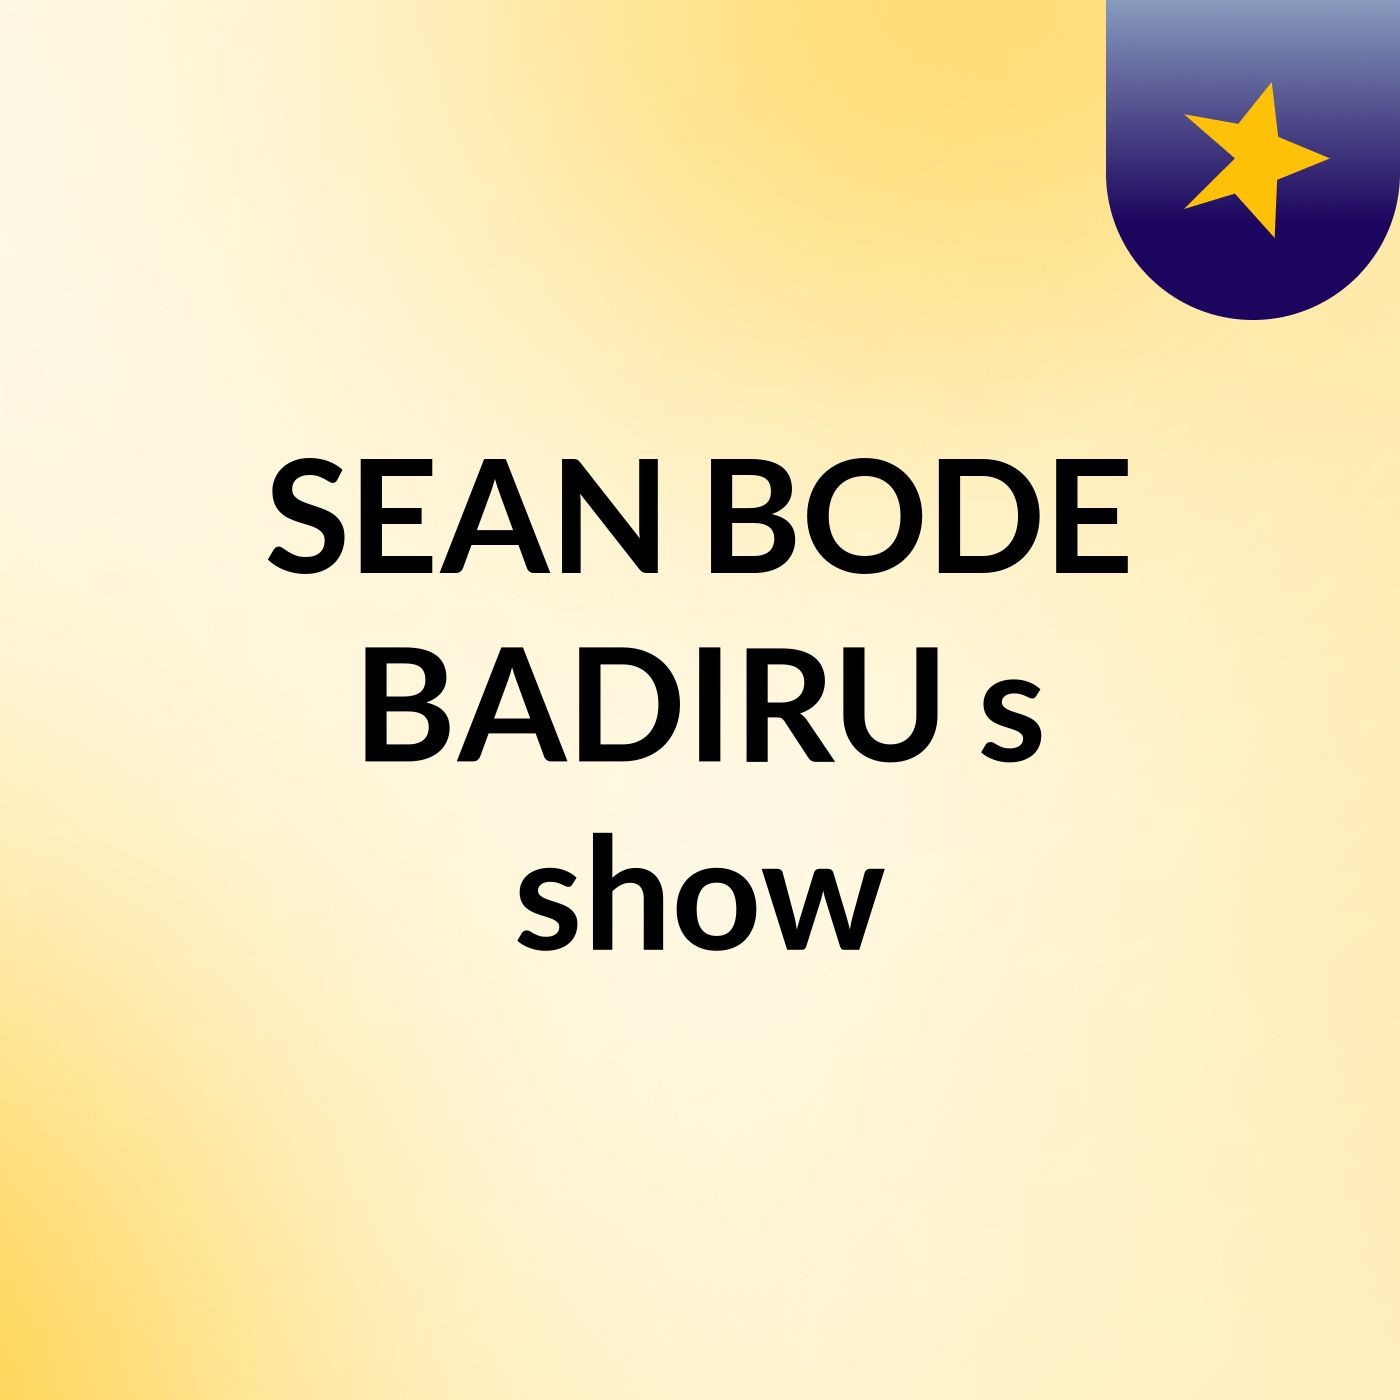 SEAN BODE BADIRU's show